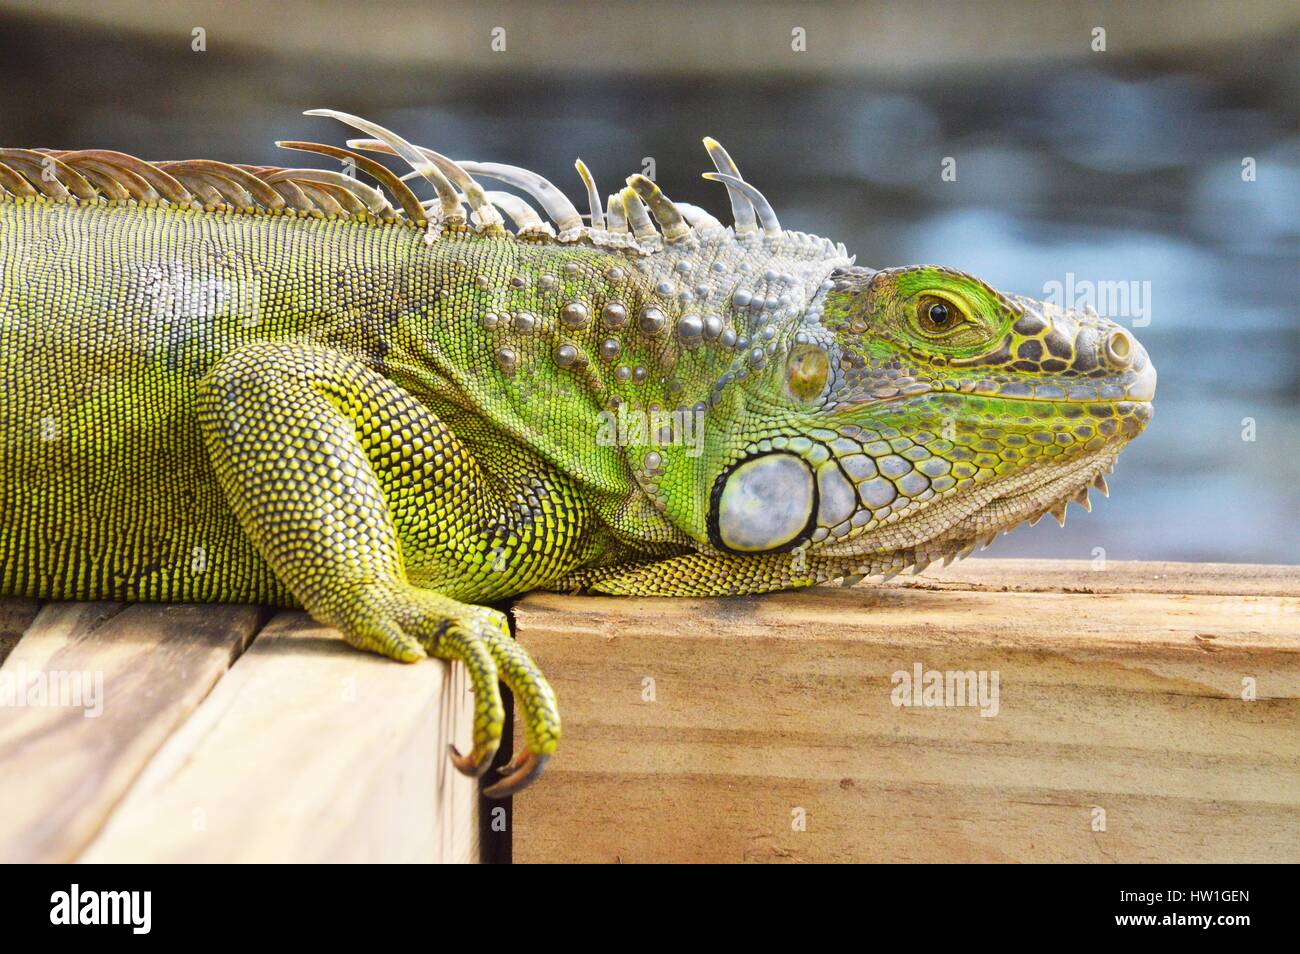 Iguana on the dock Stock Photo